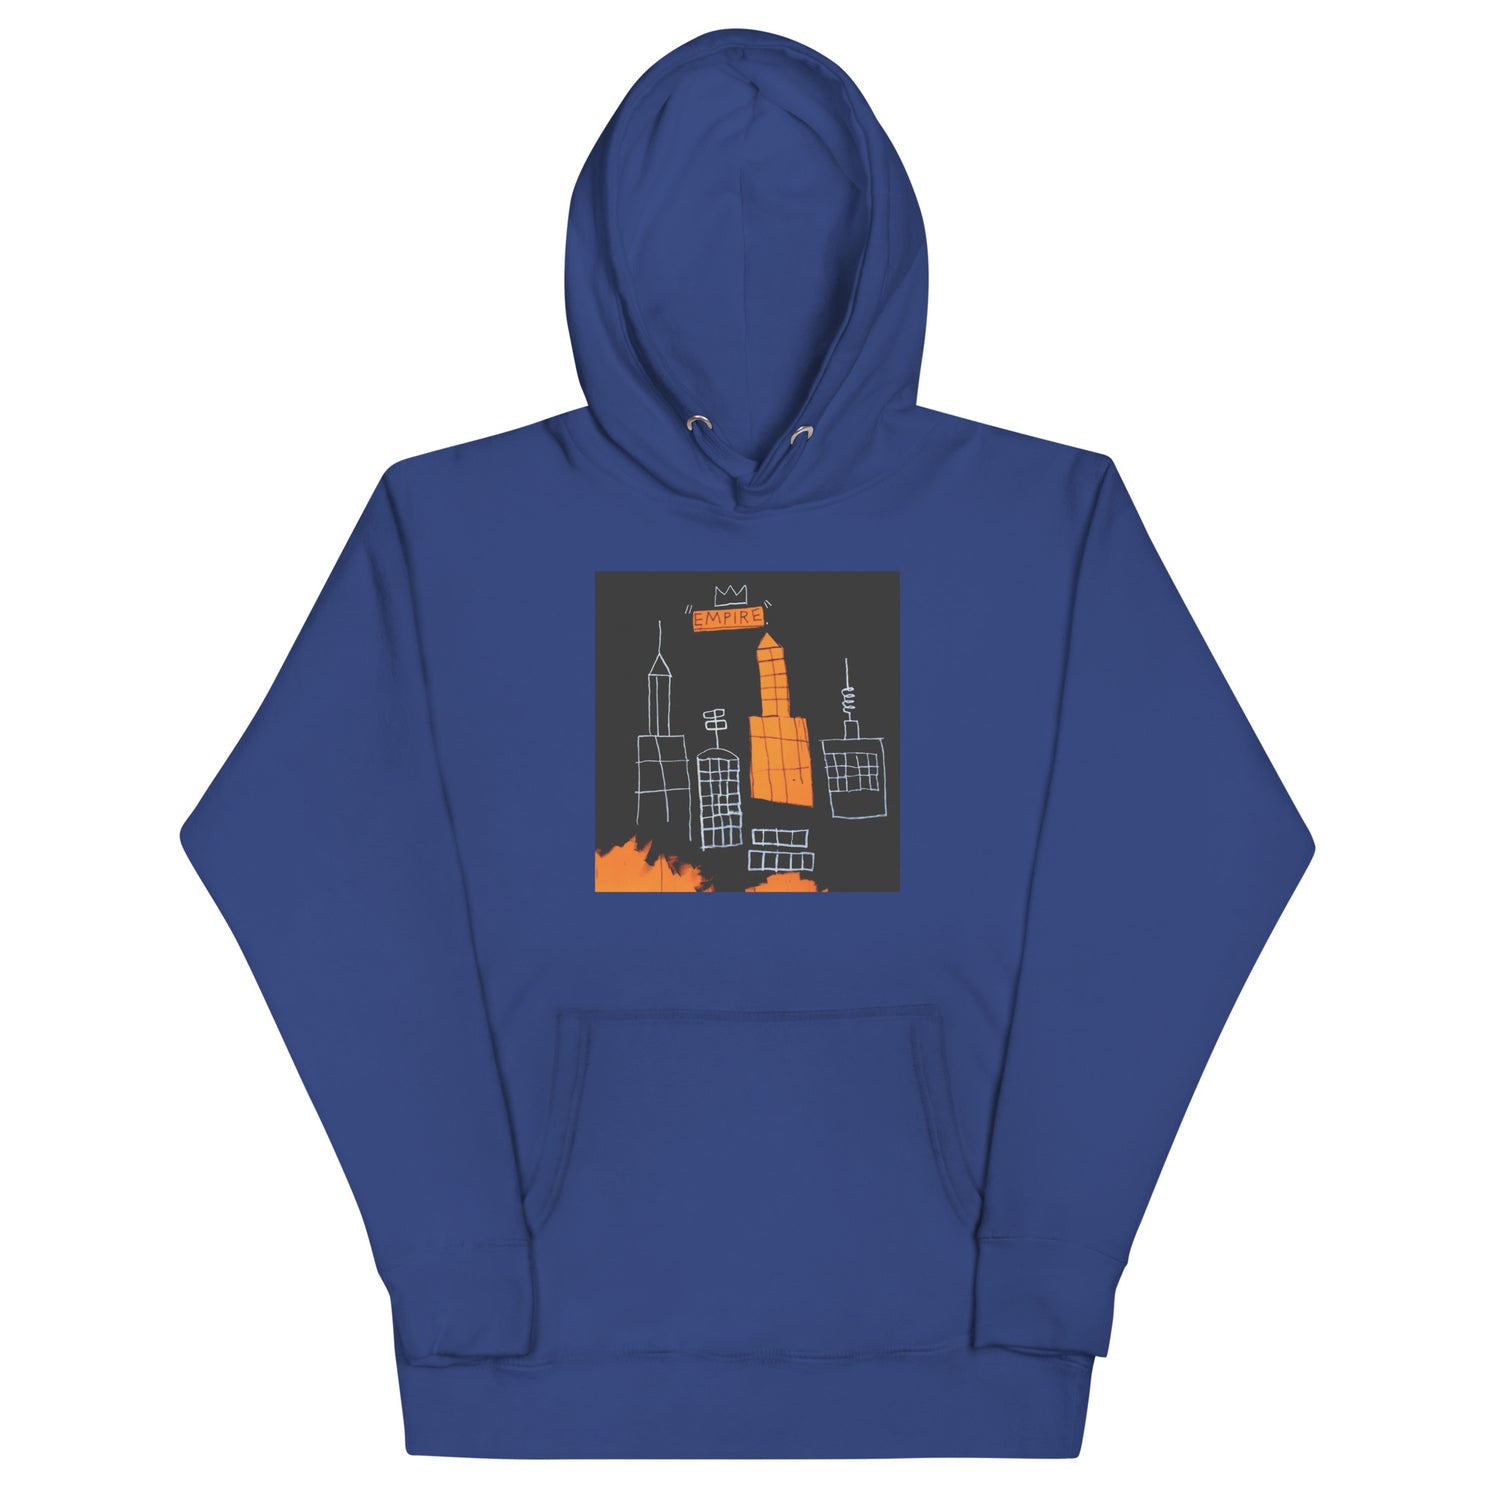 Jean-Michel Basquiat "Mecca" Artwork Printed Premium Streetwear Sweatshirt Hoodie Navy Blue